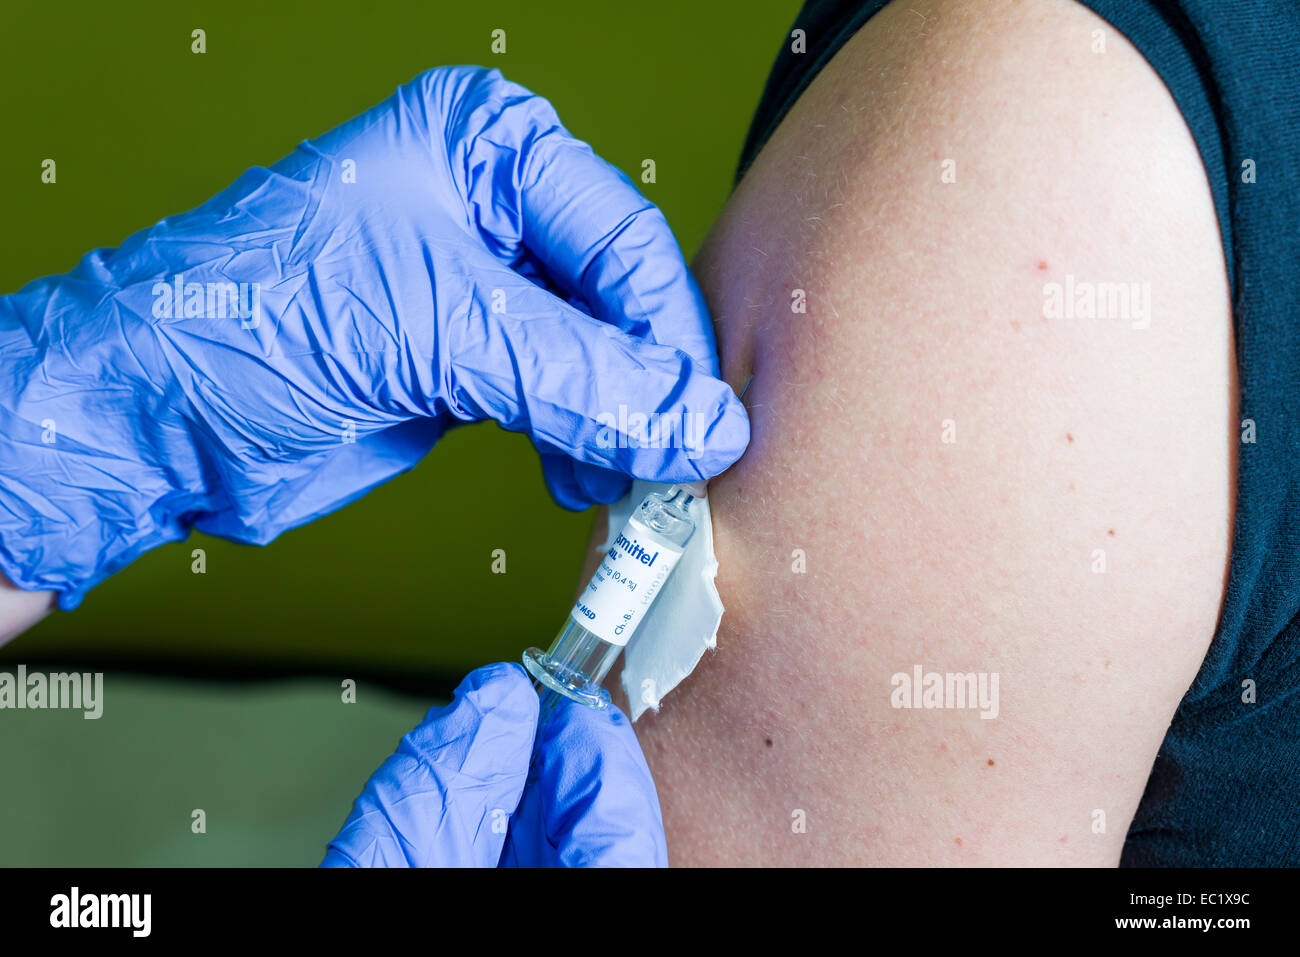 L'injection de médicament dans un bras, Berlin, Allemagne Banque D'Images